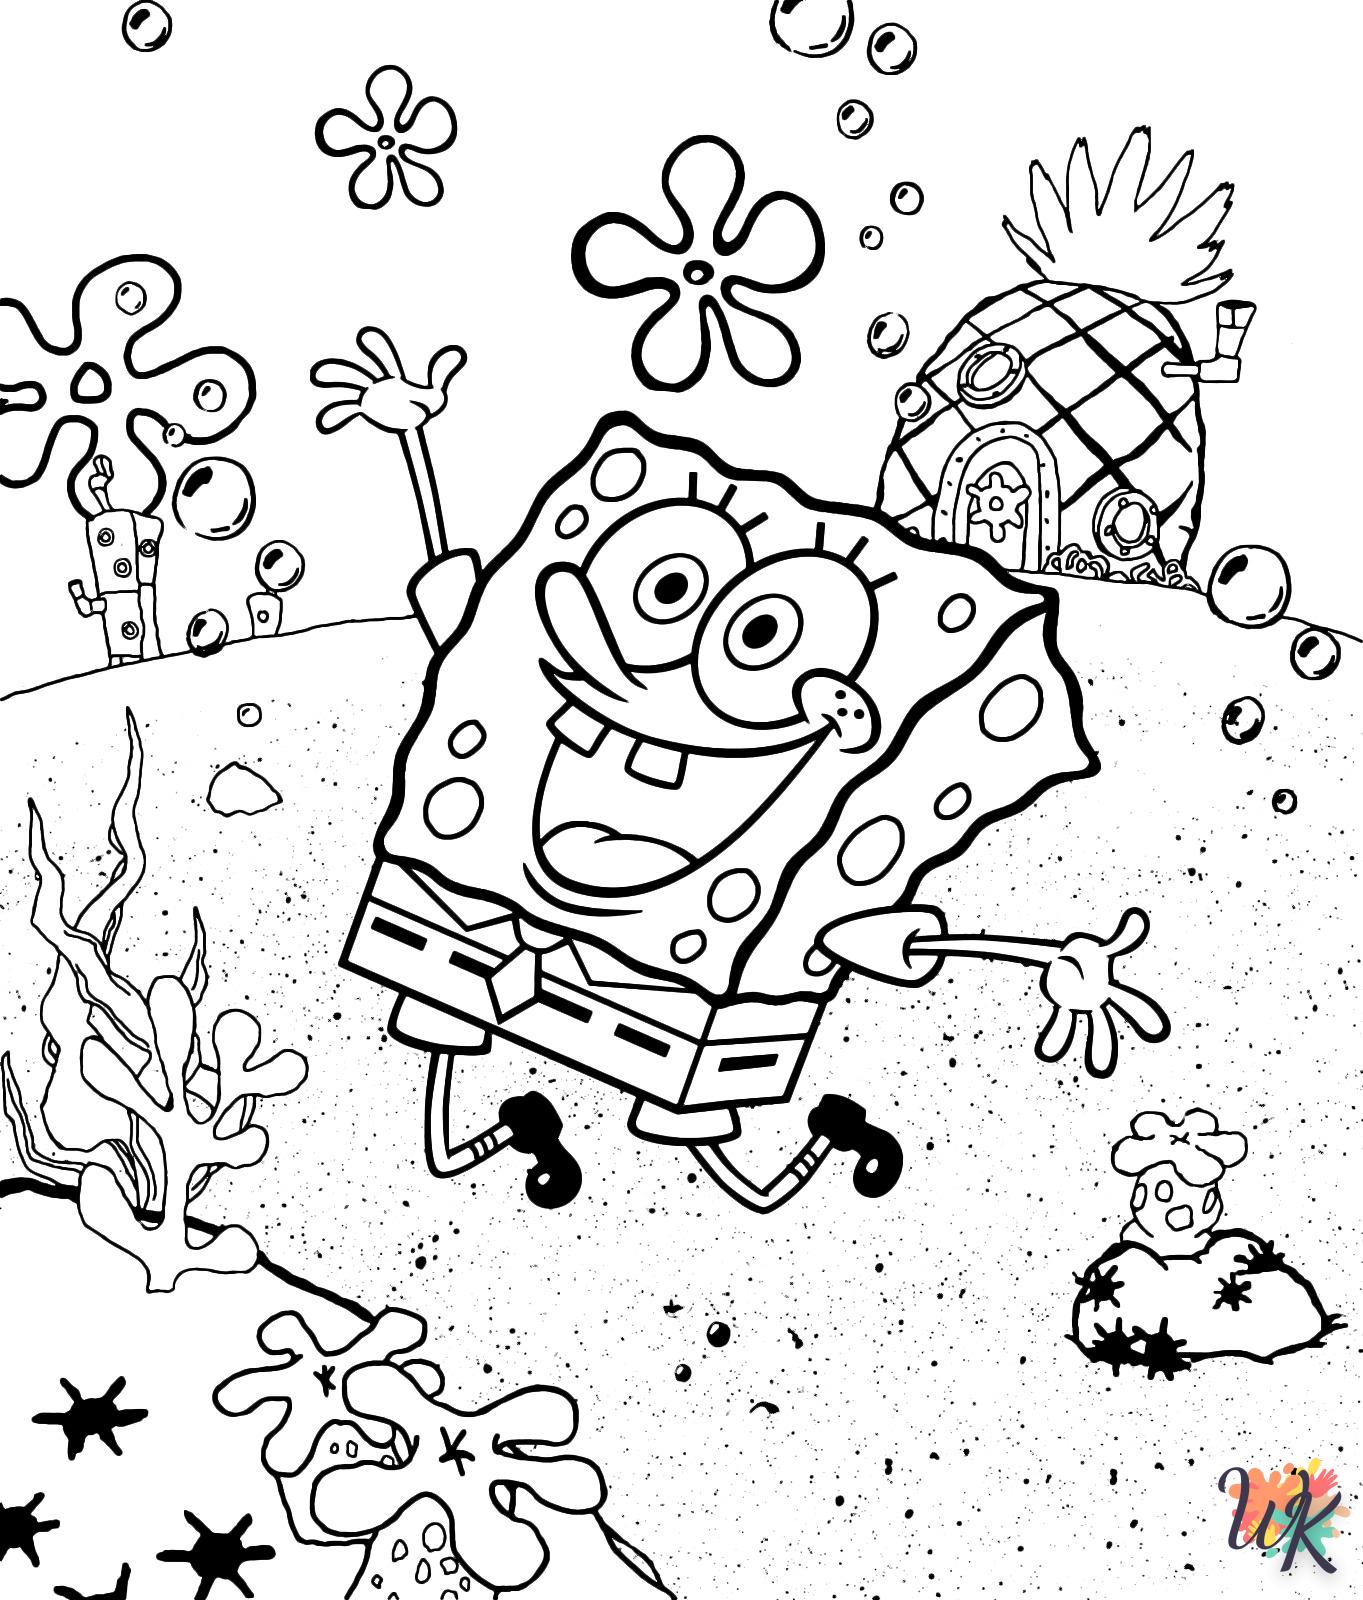 Spongebob 27